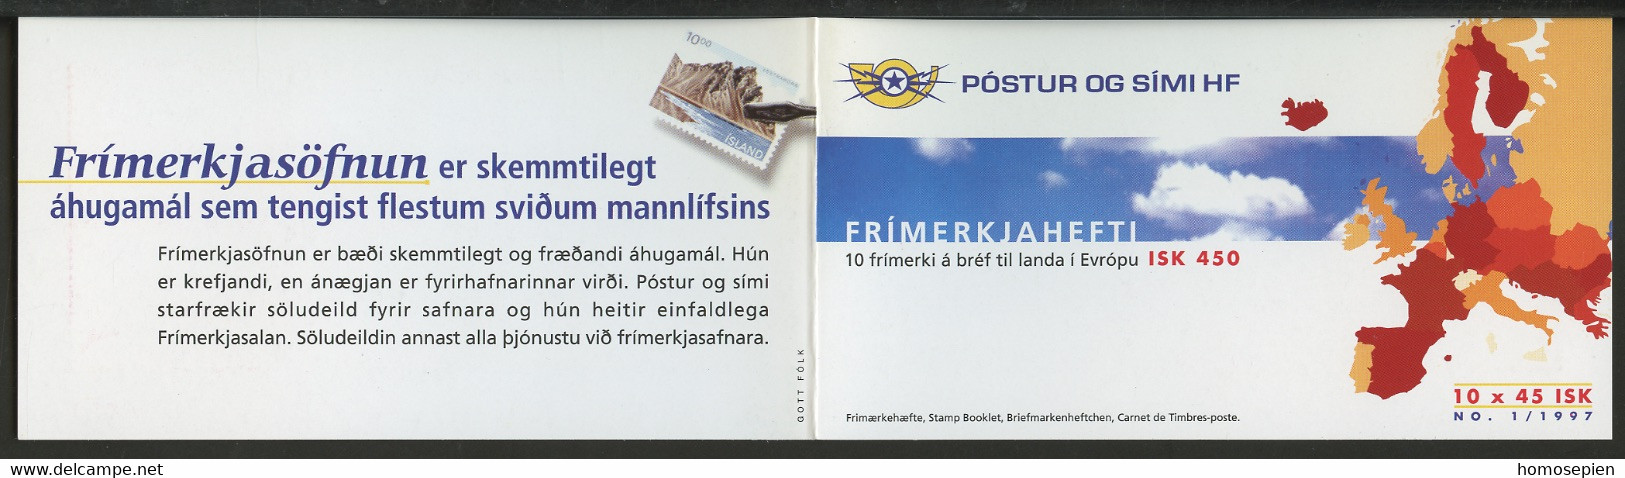 Islande - Island - Iceland Carnet 1997 Y&T N°C825 - Michel N°MH872 *** - 45k EUROPA - Booklets